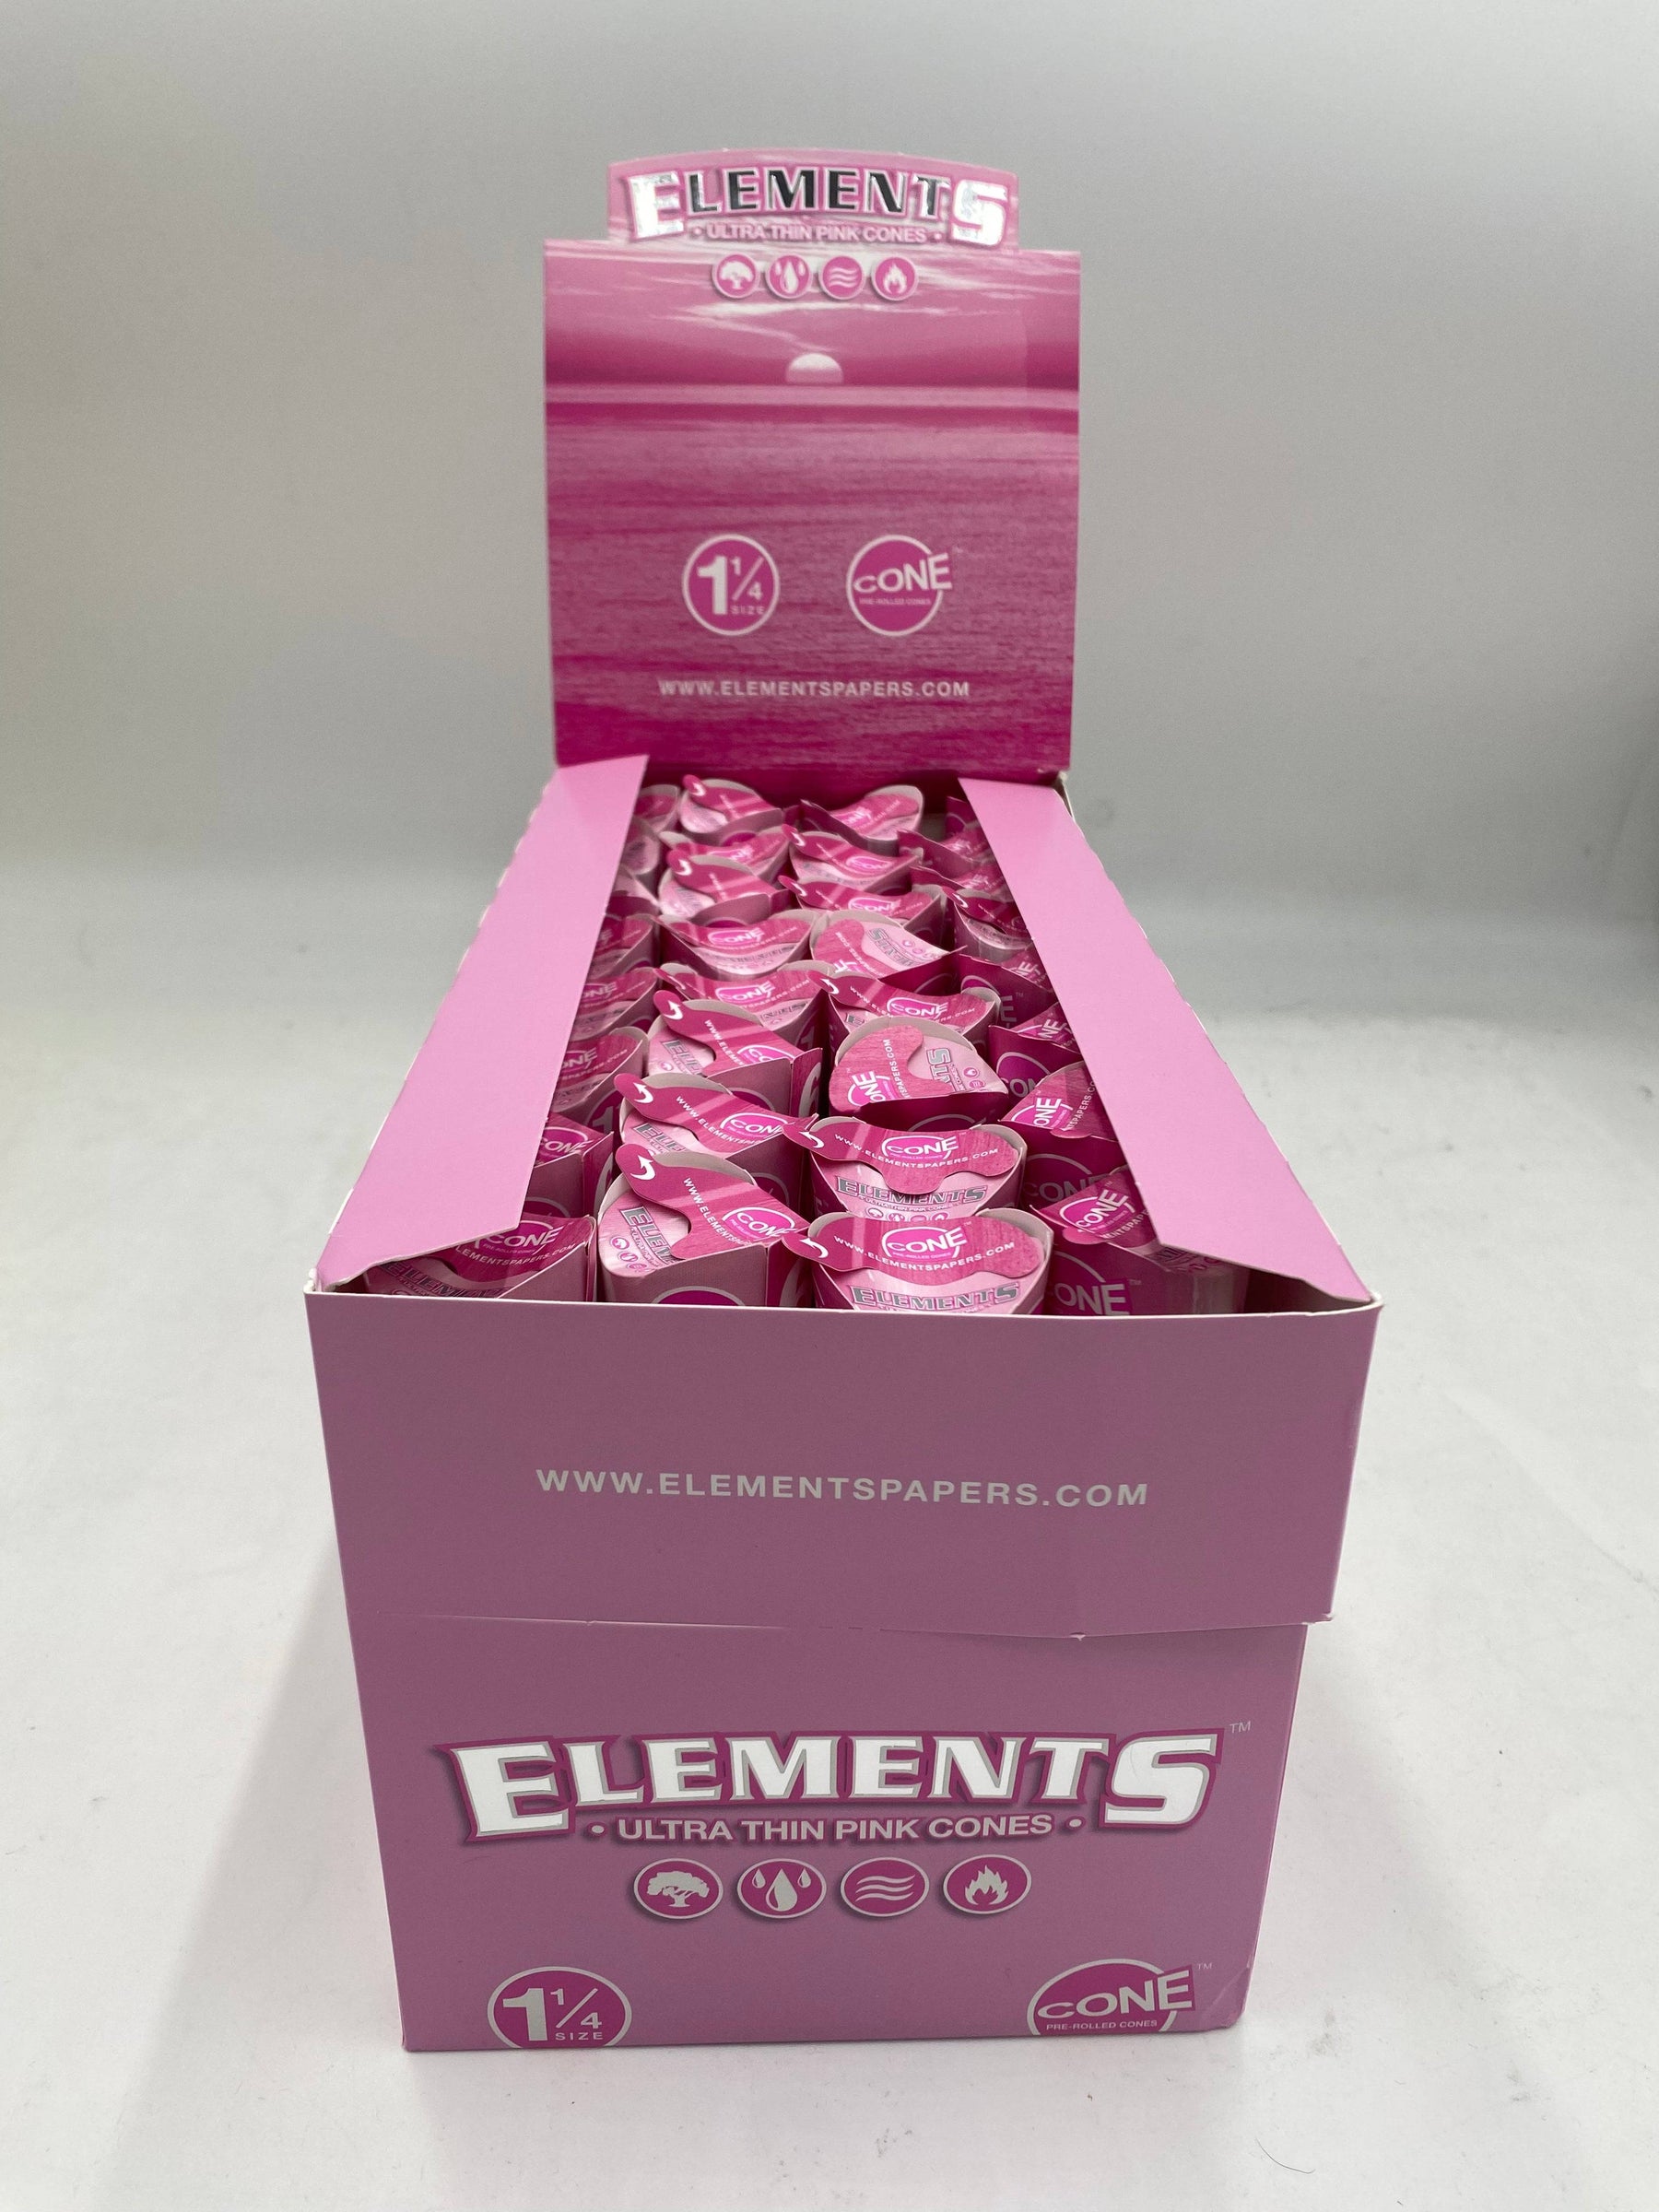 ELEMENTS 1 1/4 PINK CONES 6 PK 32 CT BOX